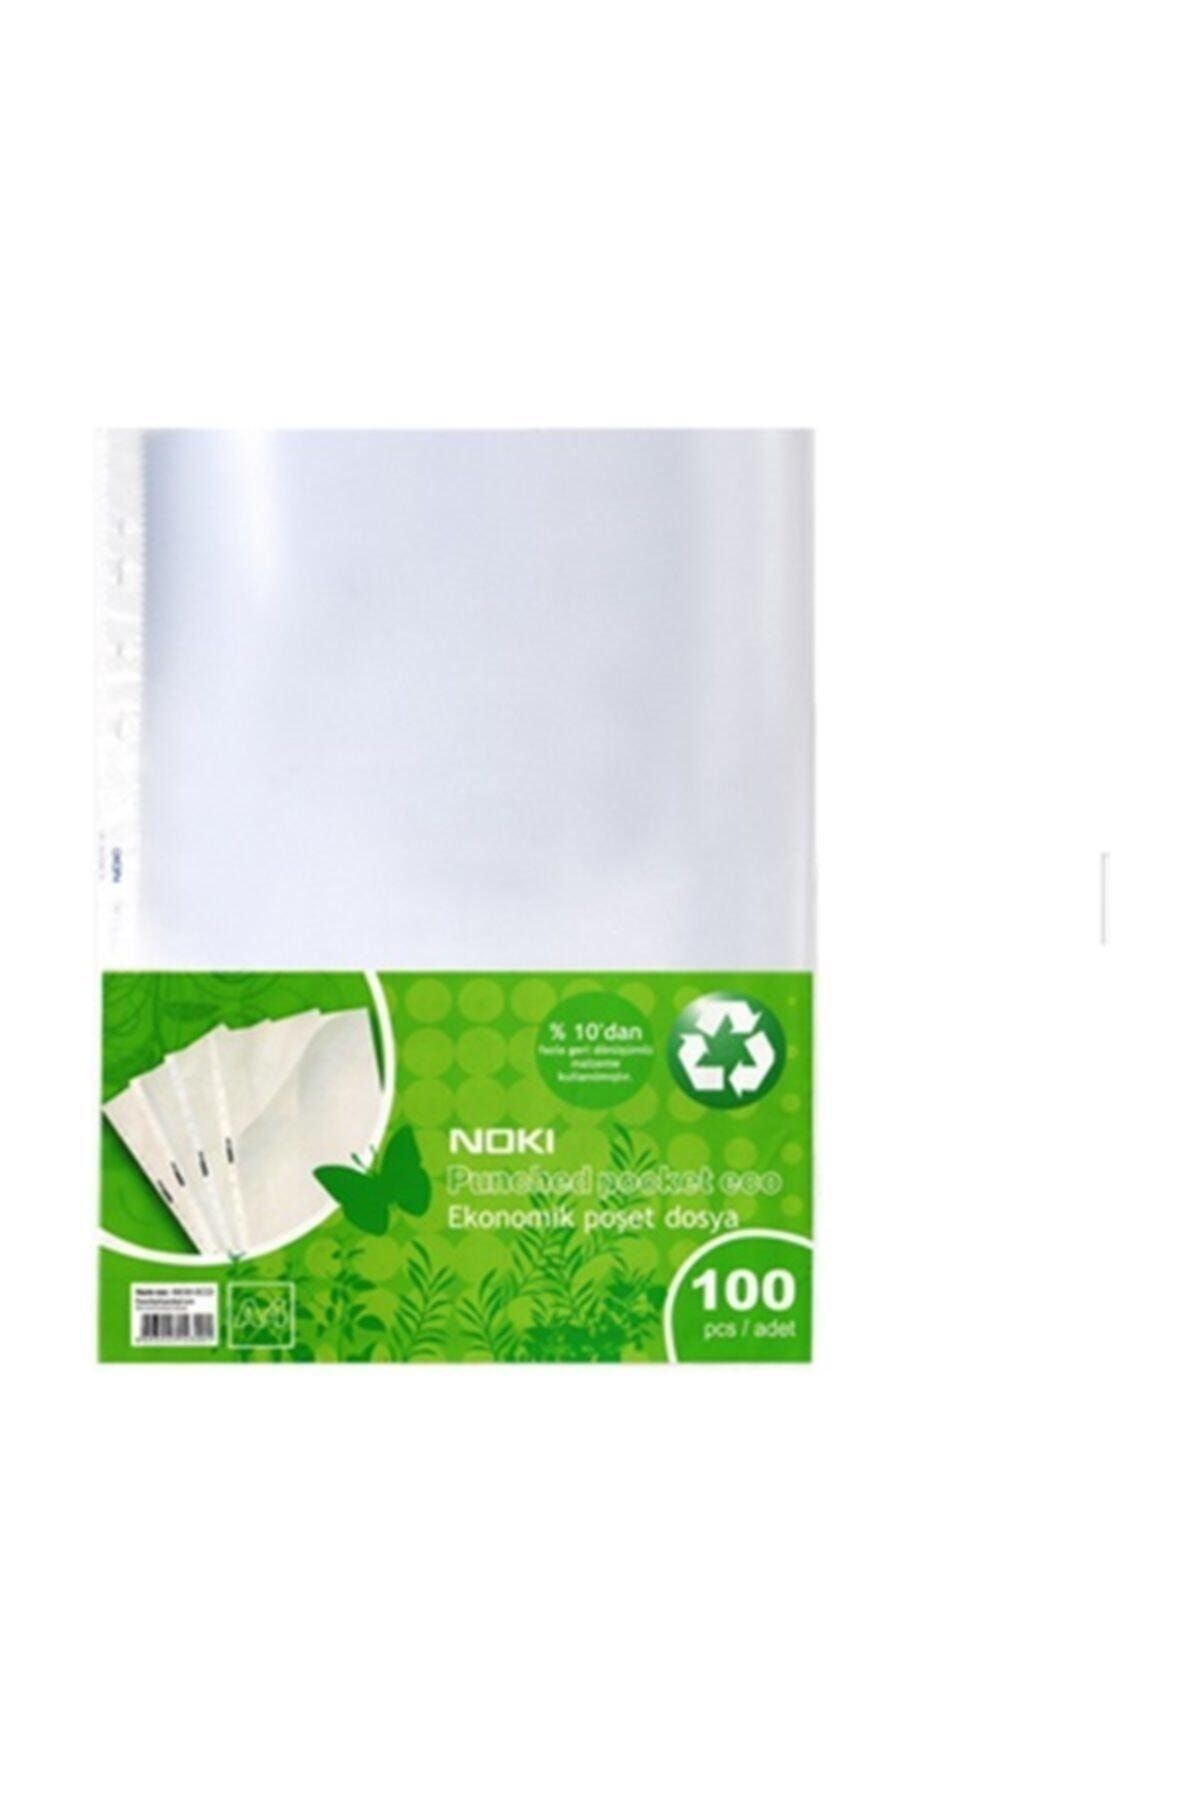 Noki Eco Poşet Dosya A/4 100lü 3 Paket 300 Adet